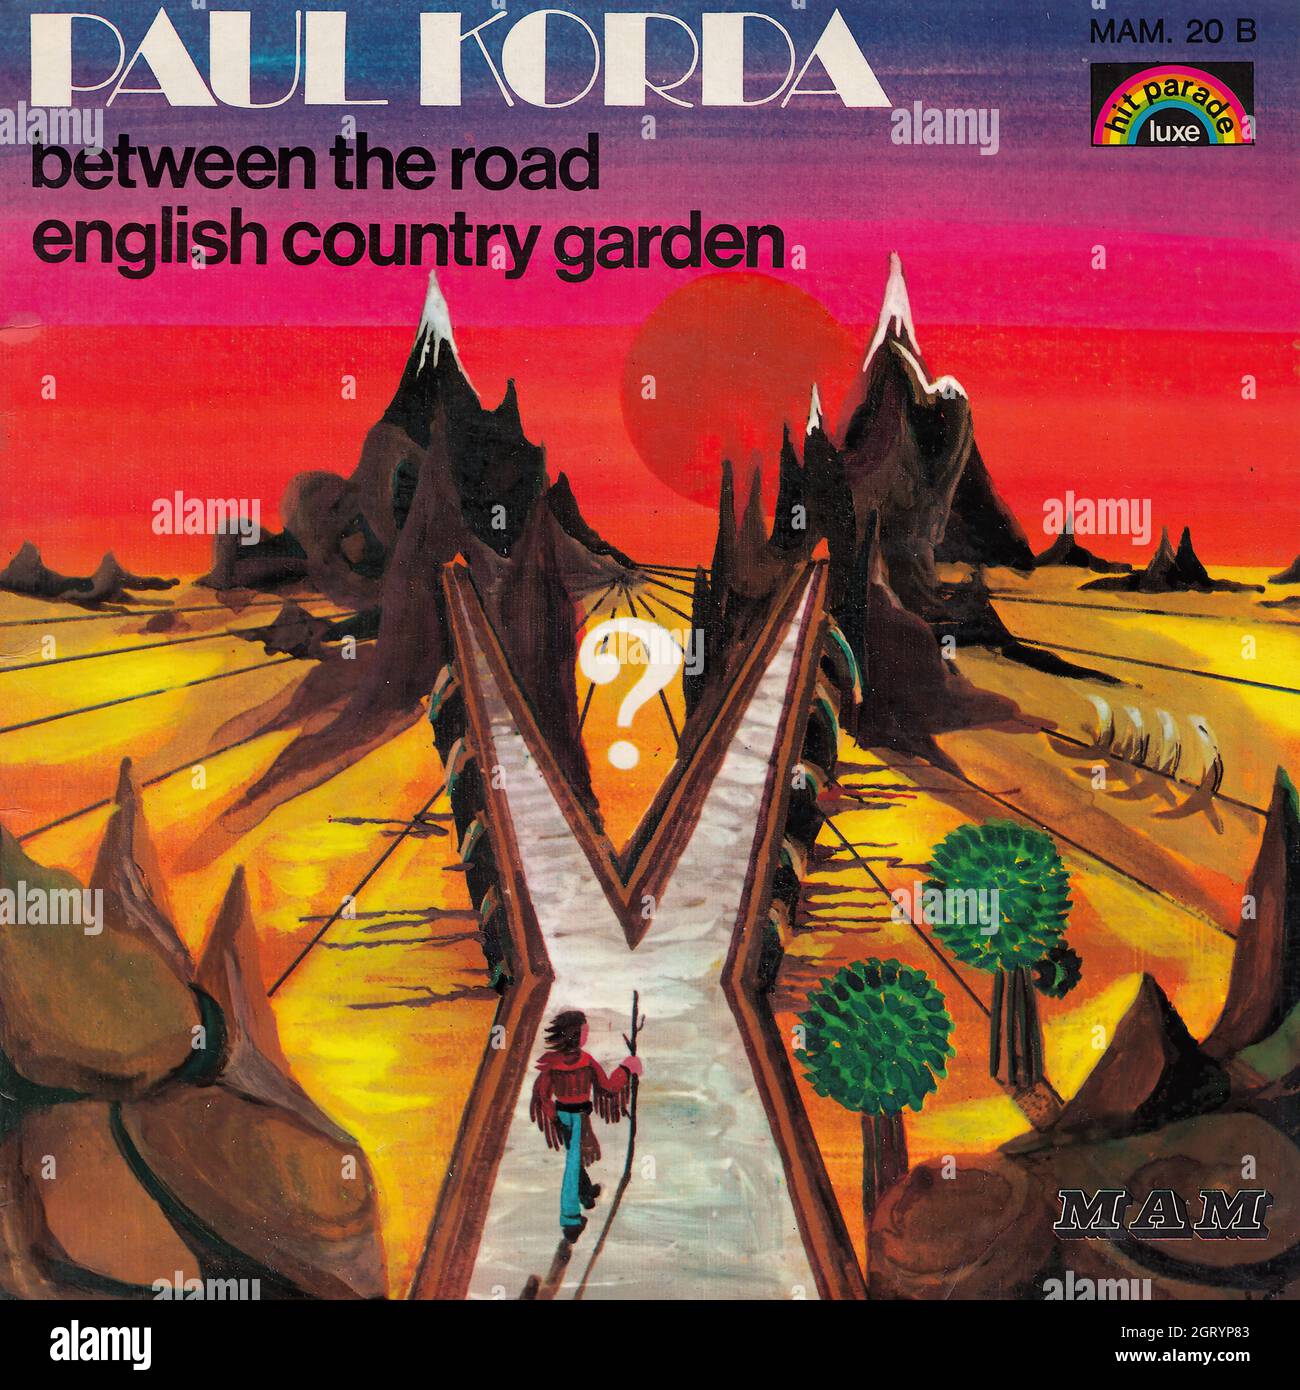 Paul Korda - entre la route - jardin de campagne anglais 45rpm - Vintage Vinyl Record Cover Banque D'Images